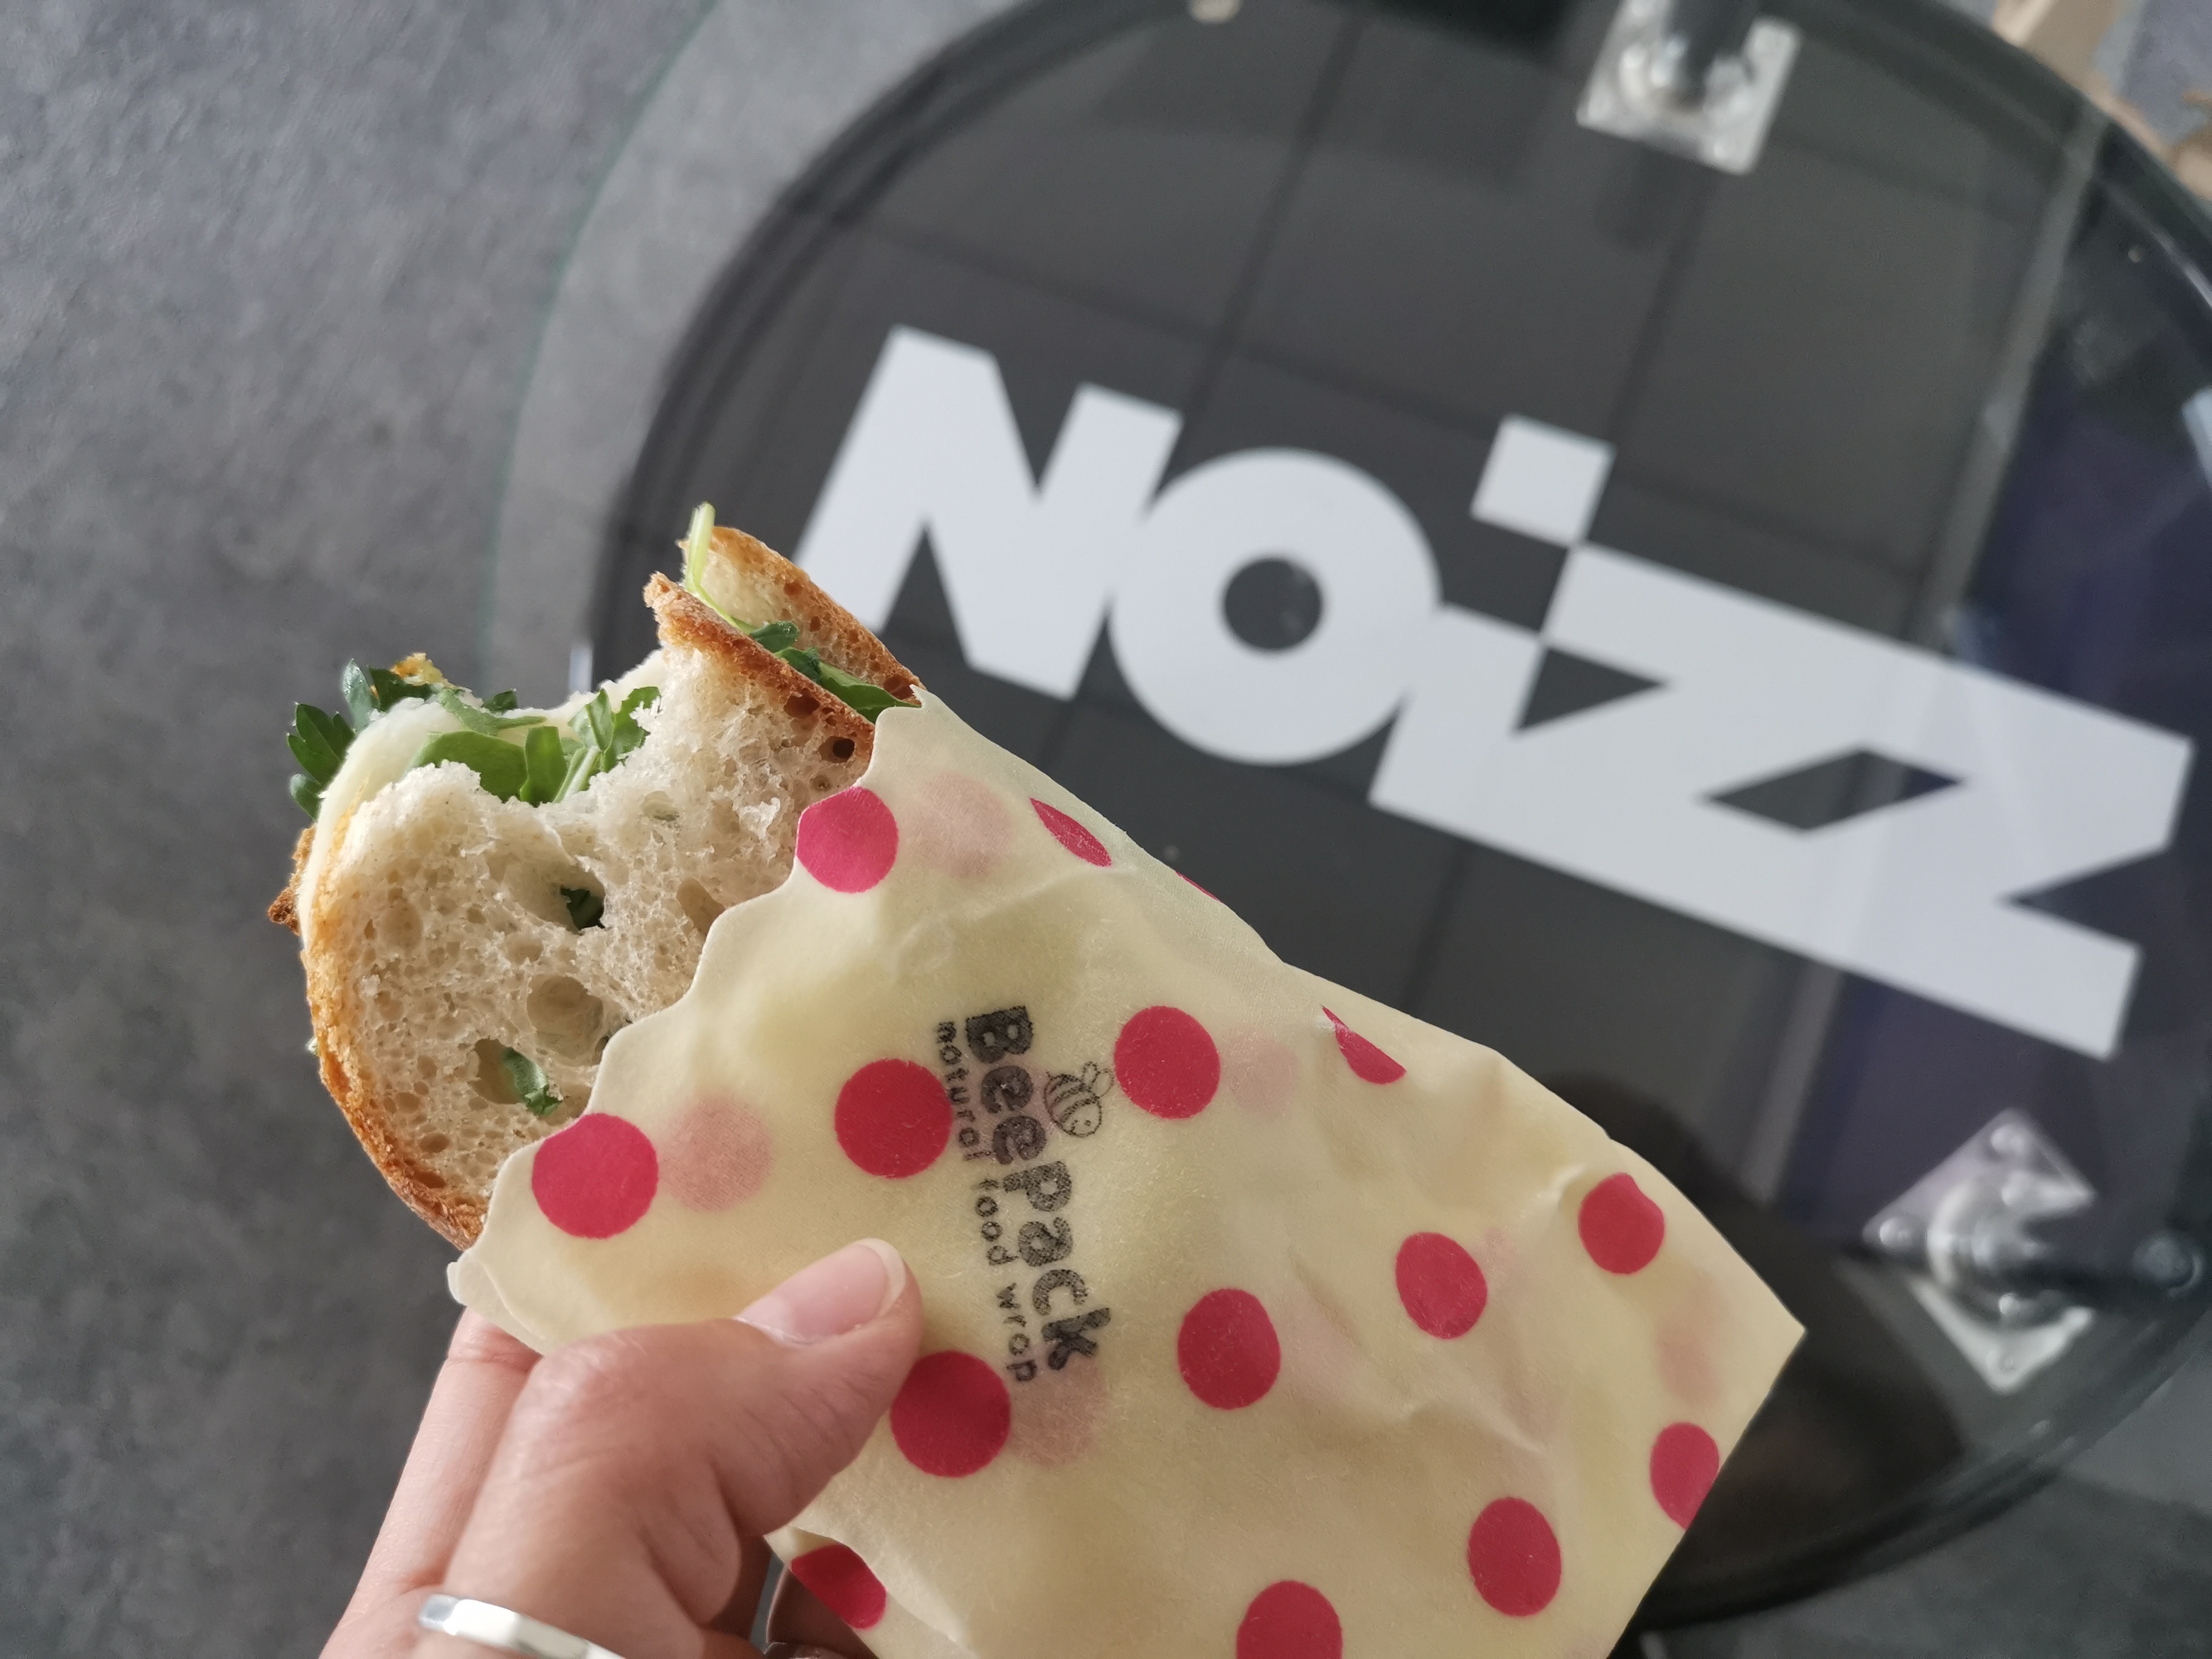 Woskowijki ekologiczny sposób na pakowanie kanapek i przechowywanie  żywności - Noizz